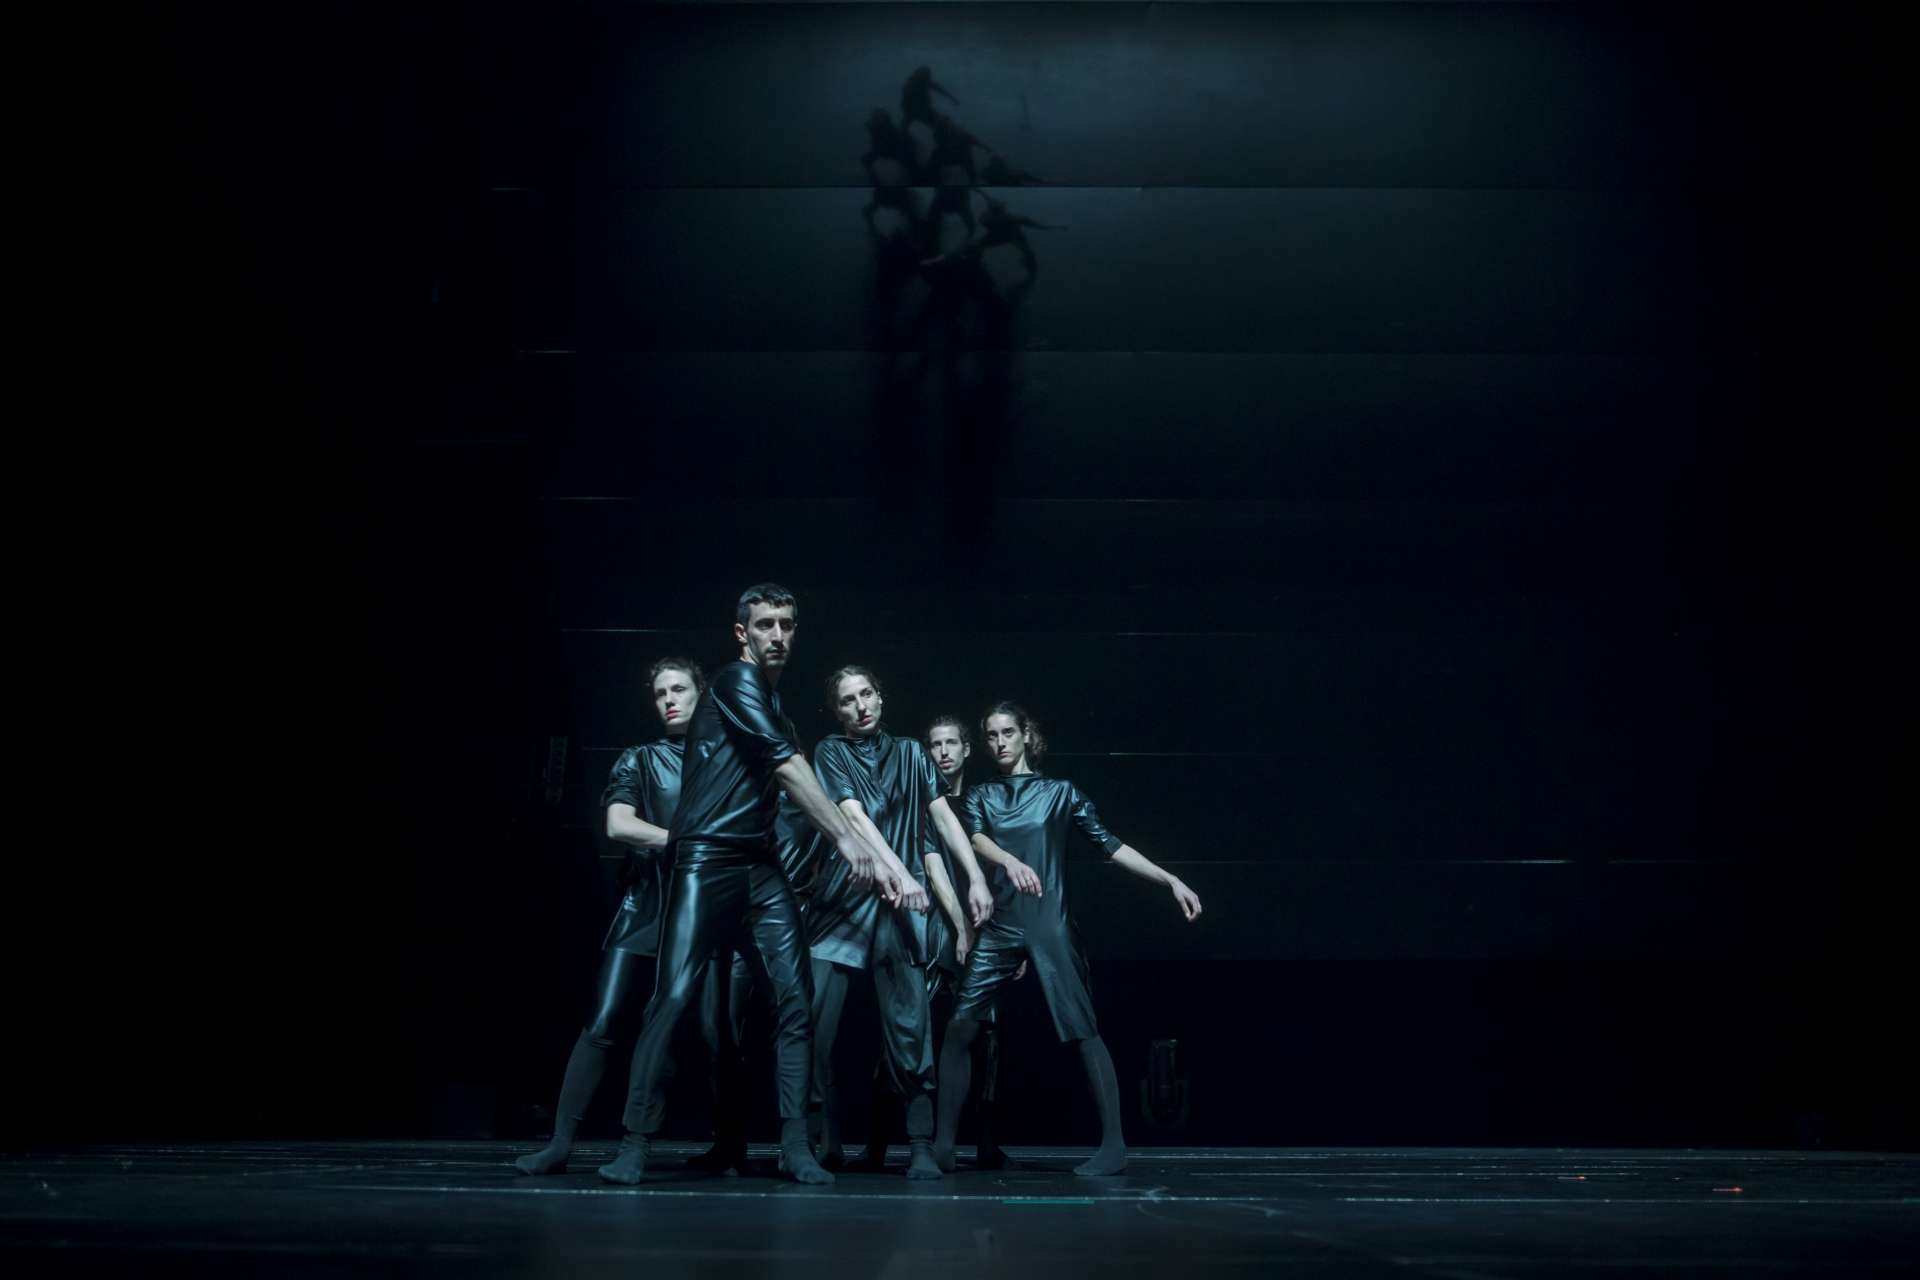 Sur scène fond noir, cinq danseurs/danseuses en costume bleu glacier 